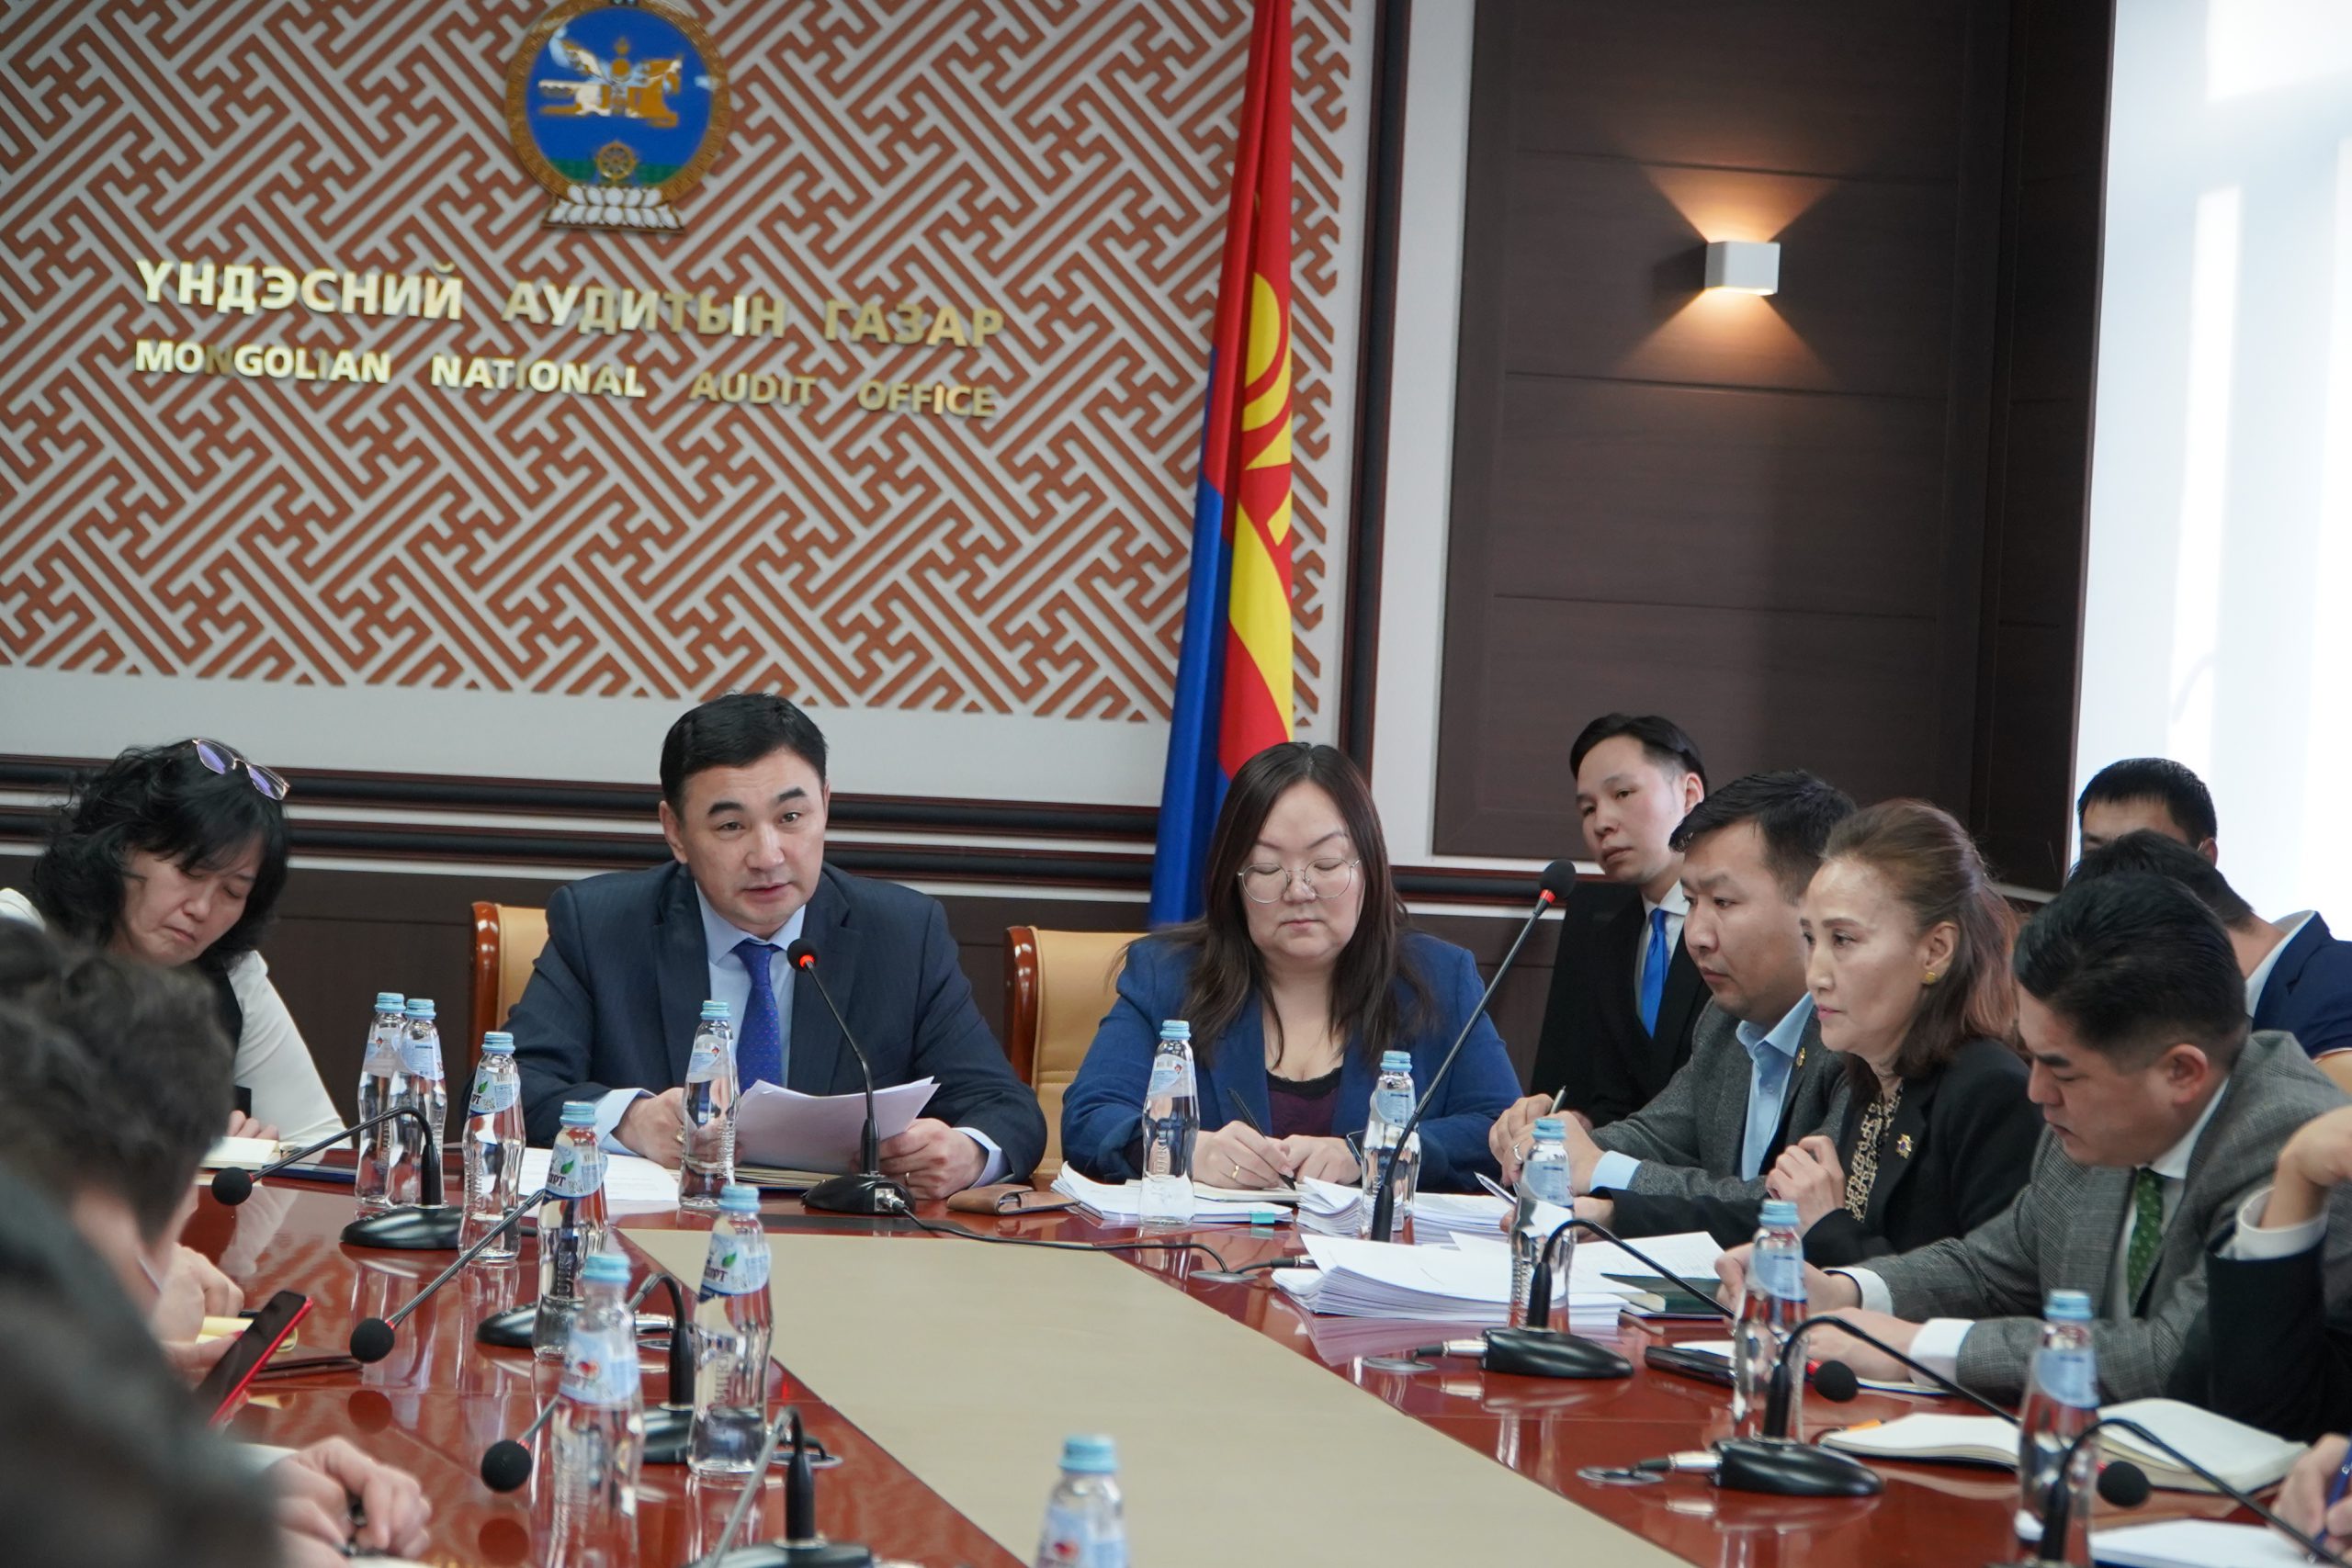 Монгол Улсын 2022 оны хөгжлийн болон Улс, орон нутгийн төсвийн хөрөнгө оруулалтын төлөвлөгөөний хэрэгжилтэд аудит хийж эхэллээ